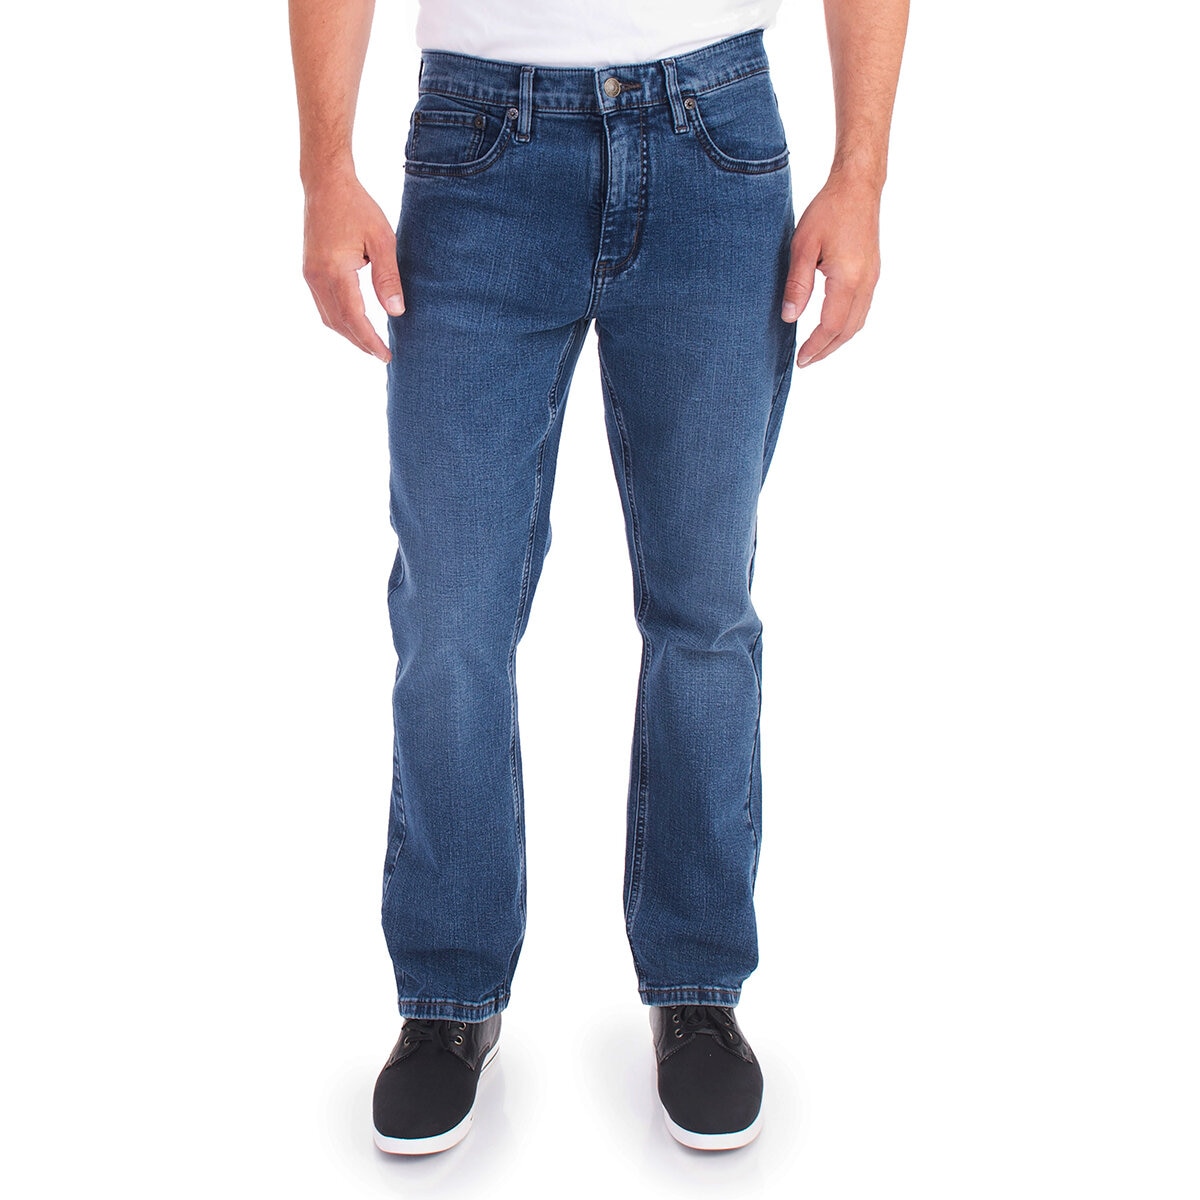 Urban Star Jeans para Caballero Azul Medio 30x30